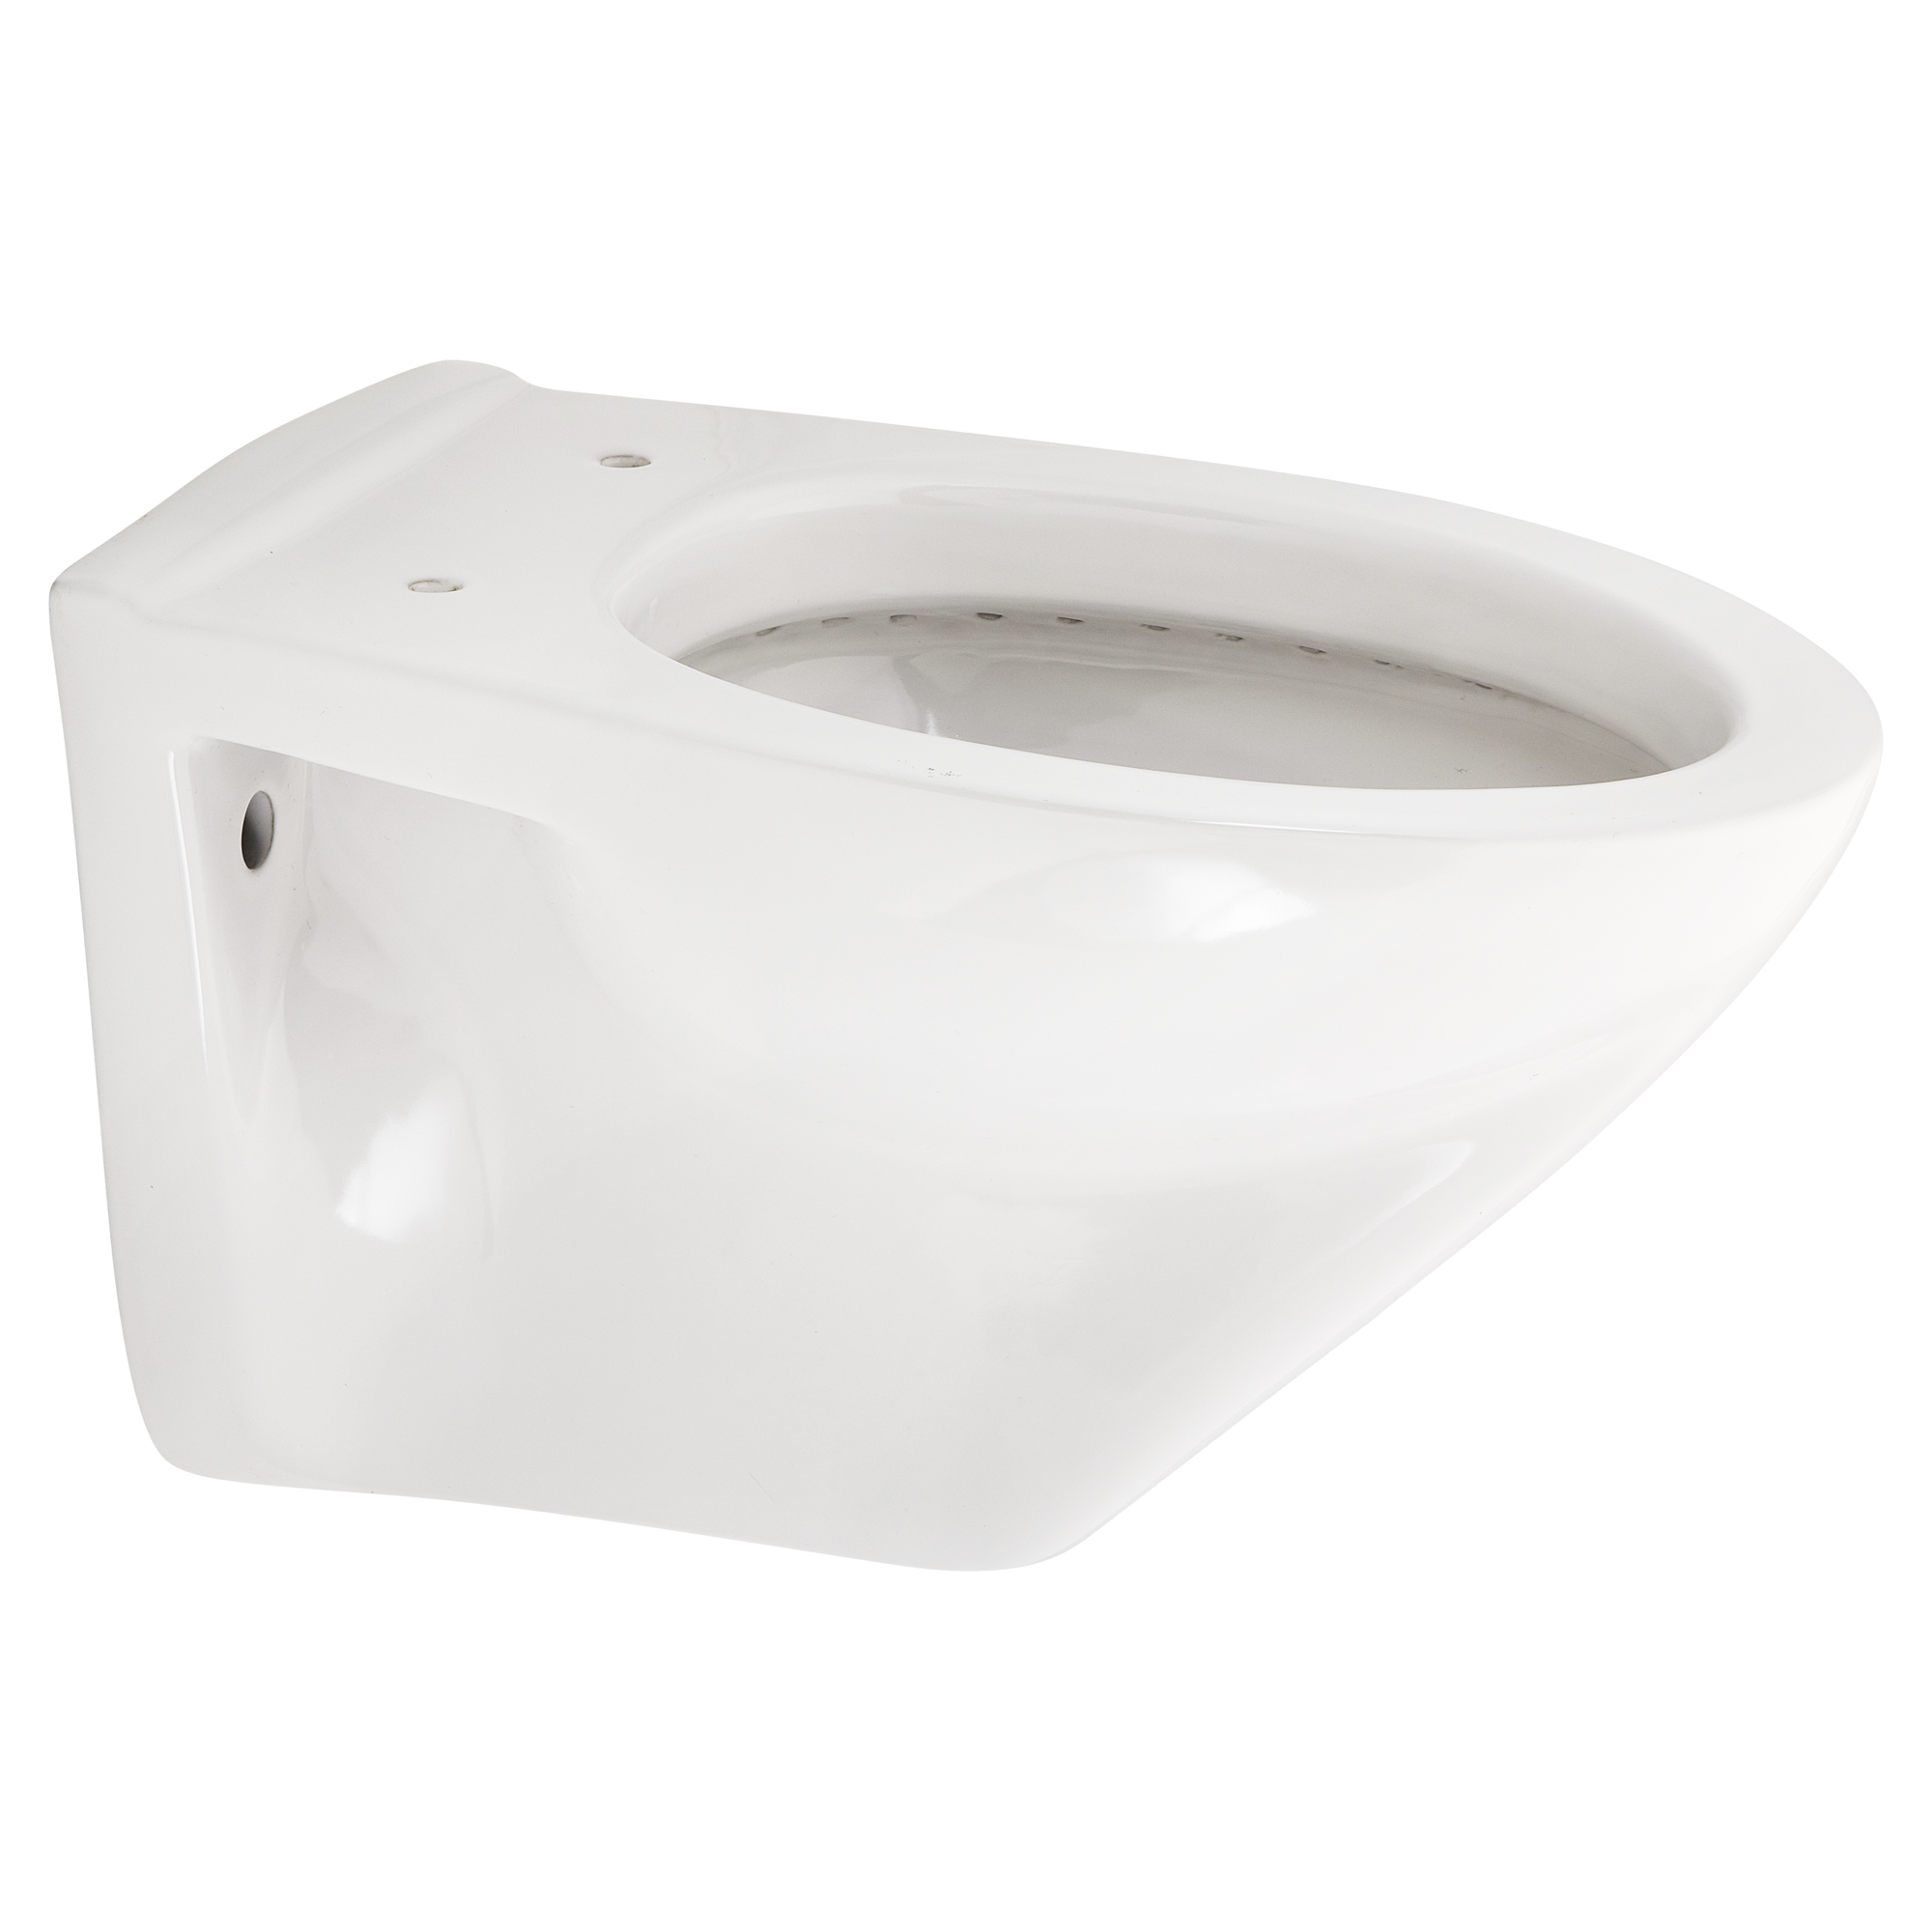 Tiefspül-WC 'DNP' + product picture